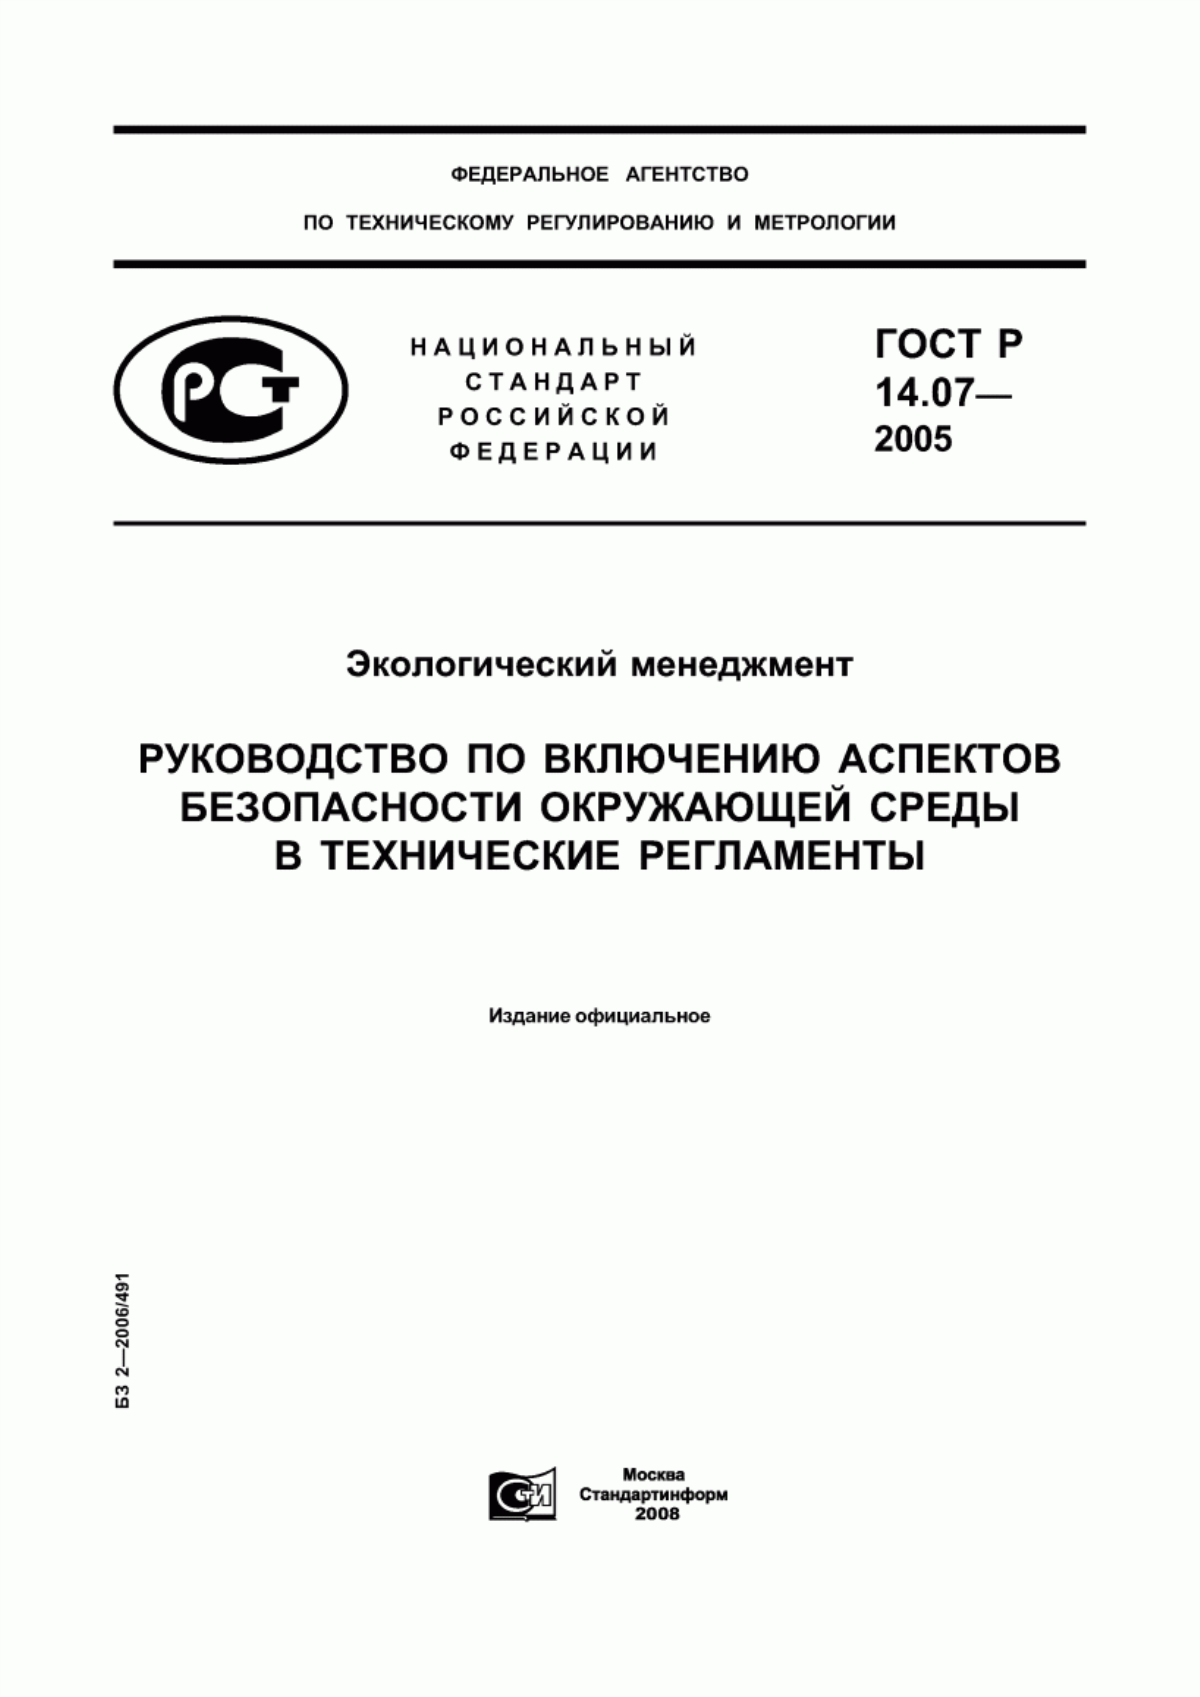 ГОСТ Р 14.07-2005 Экологический менеджмент. Руководство по включению аспектов безопасности окружающей среды в технические регламенты